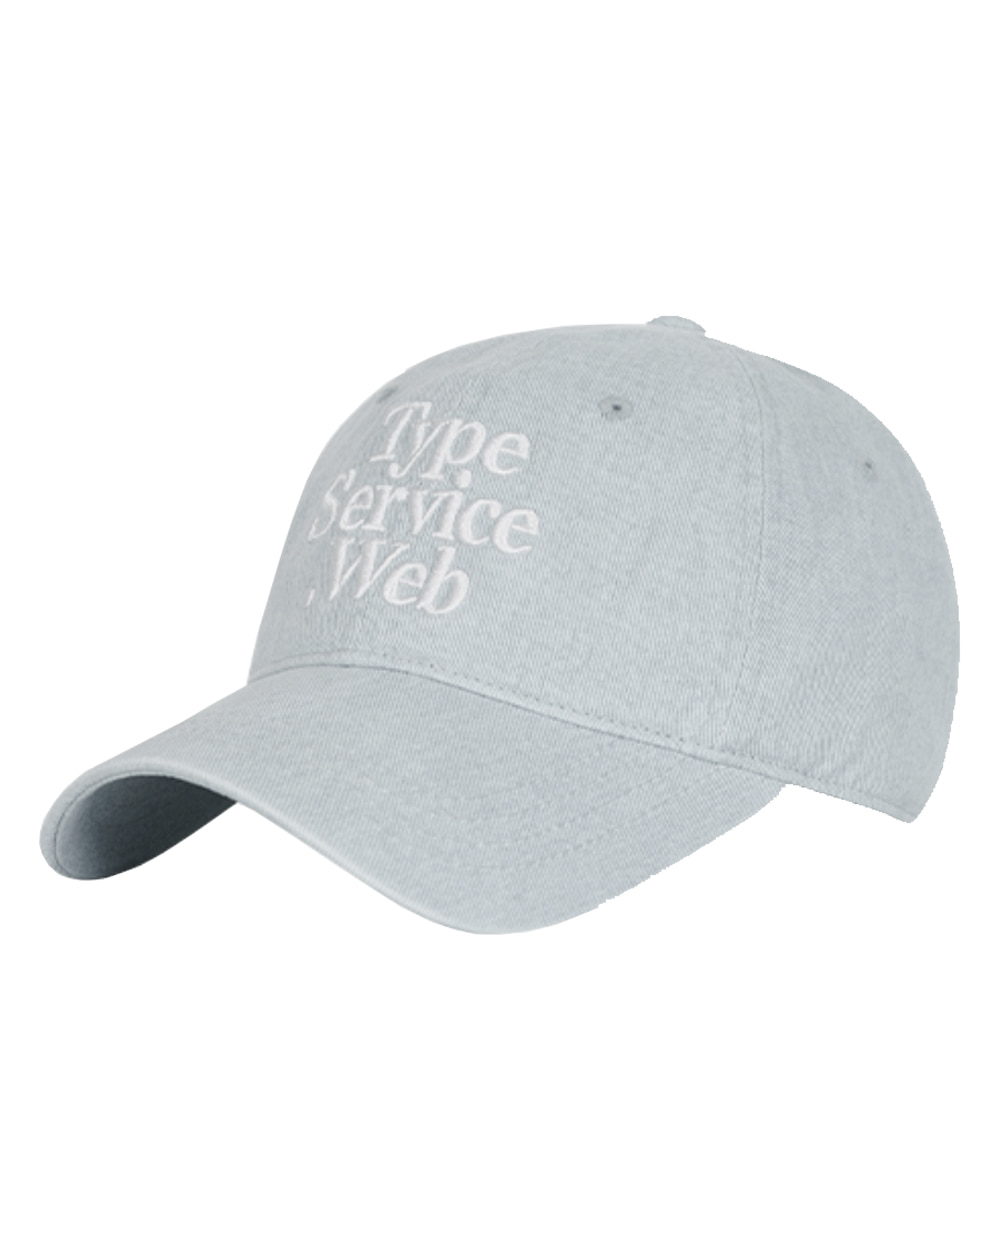 타입서비스 Typeservice Web Cap (Sky blue)